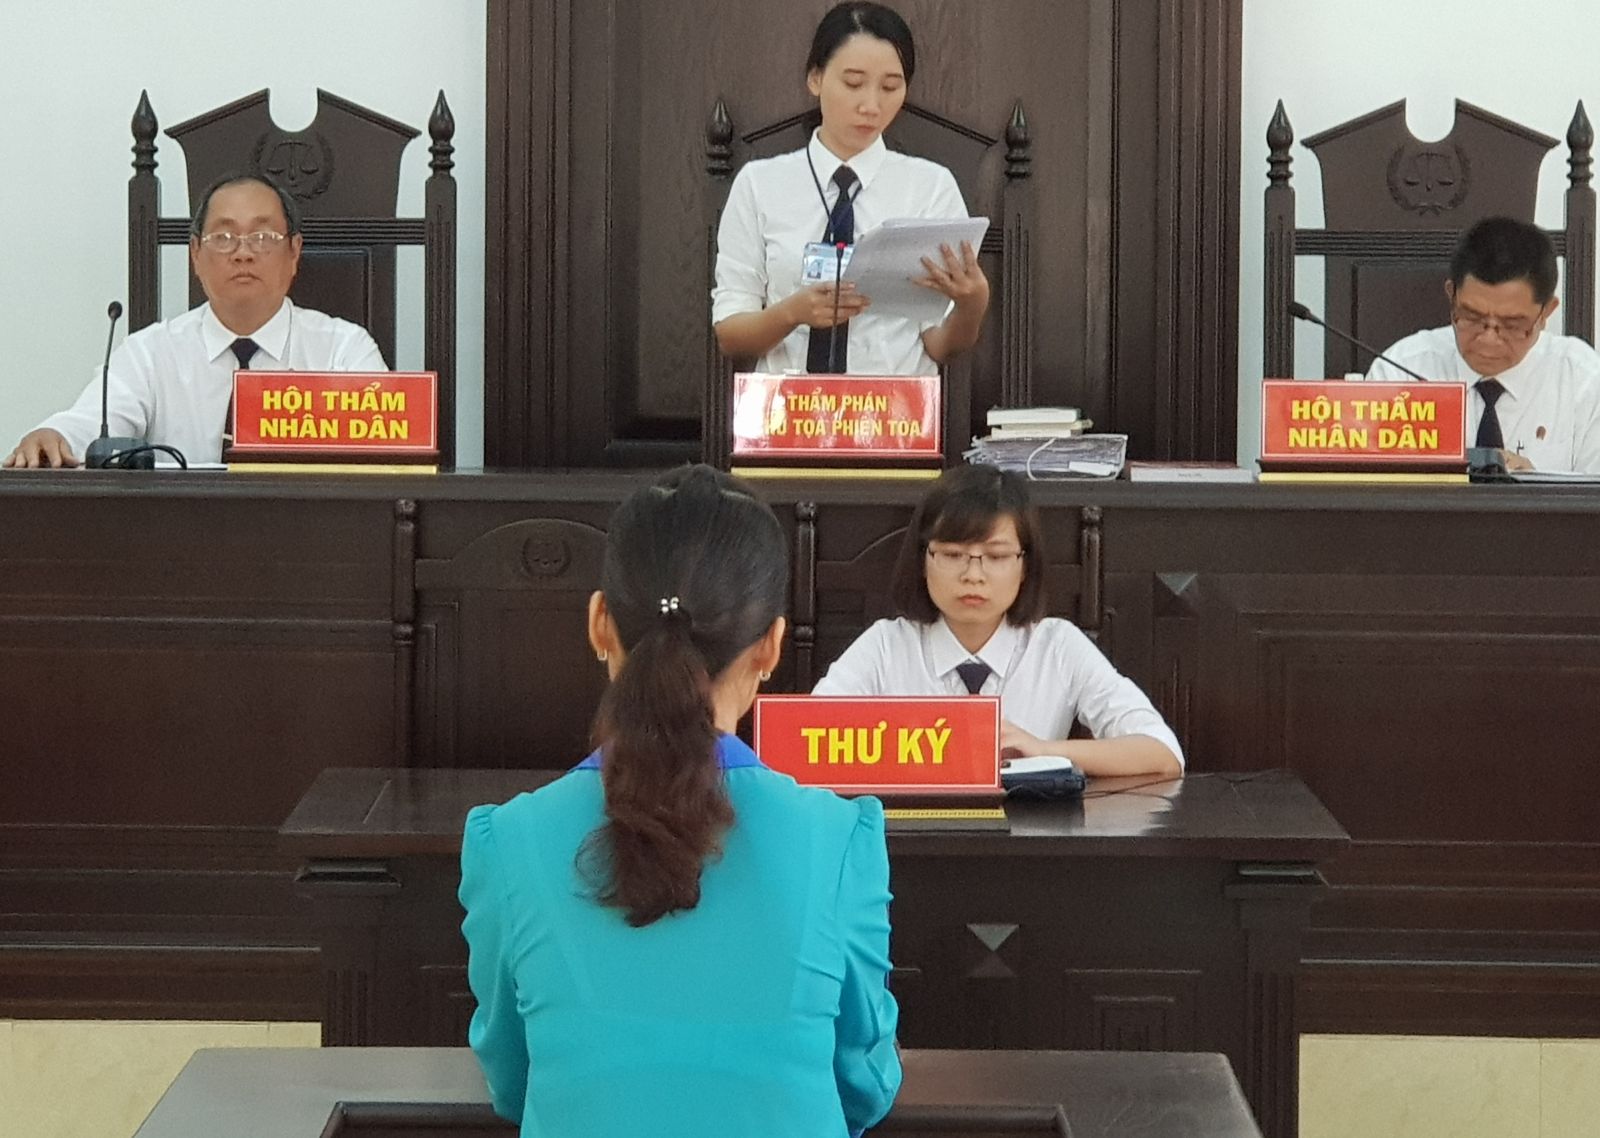 Điểm báo in Tây Ninh ngày 18.6.2018